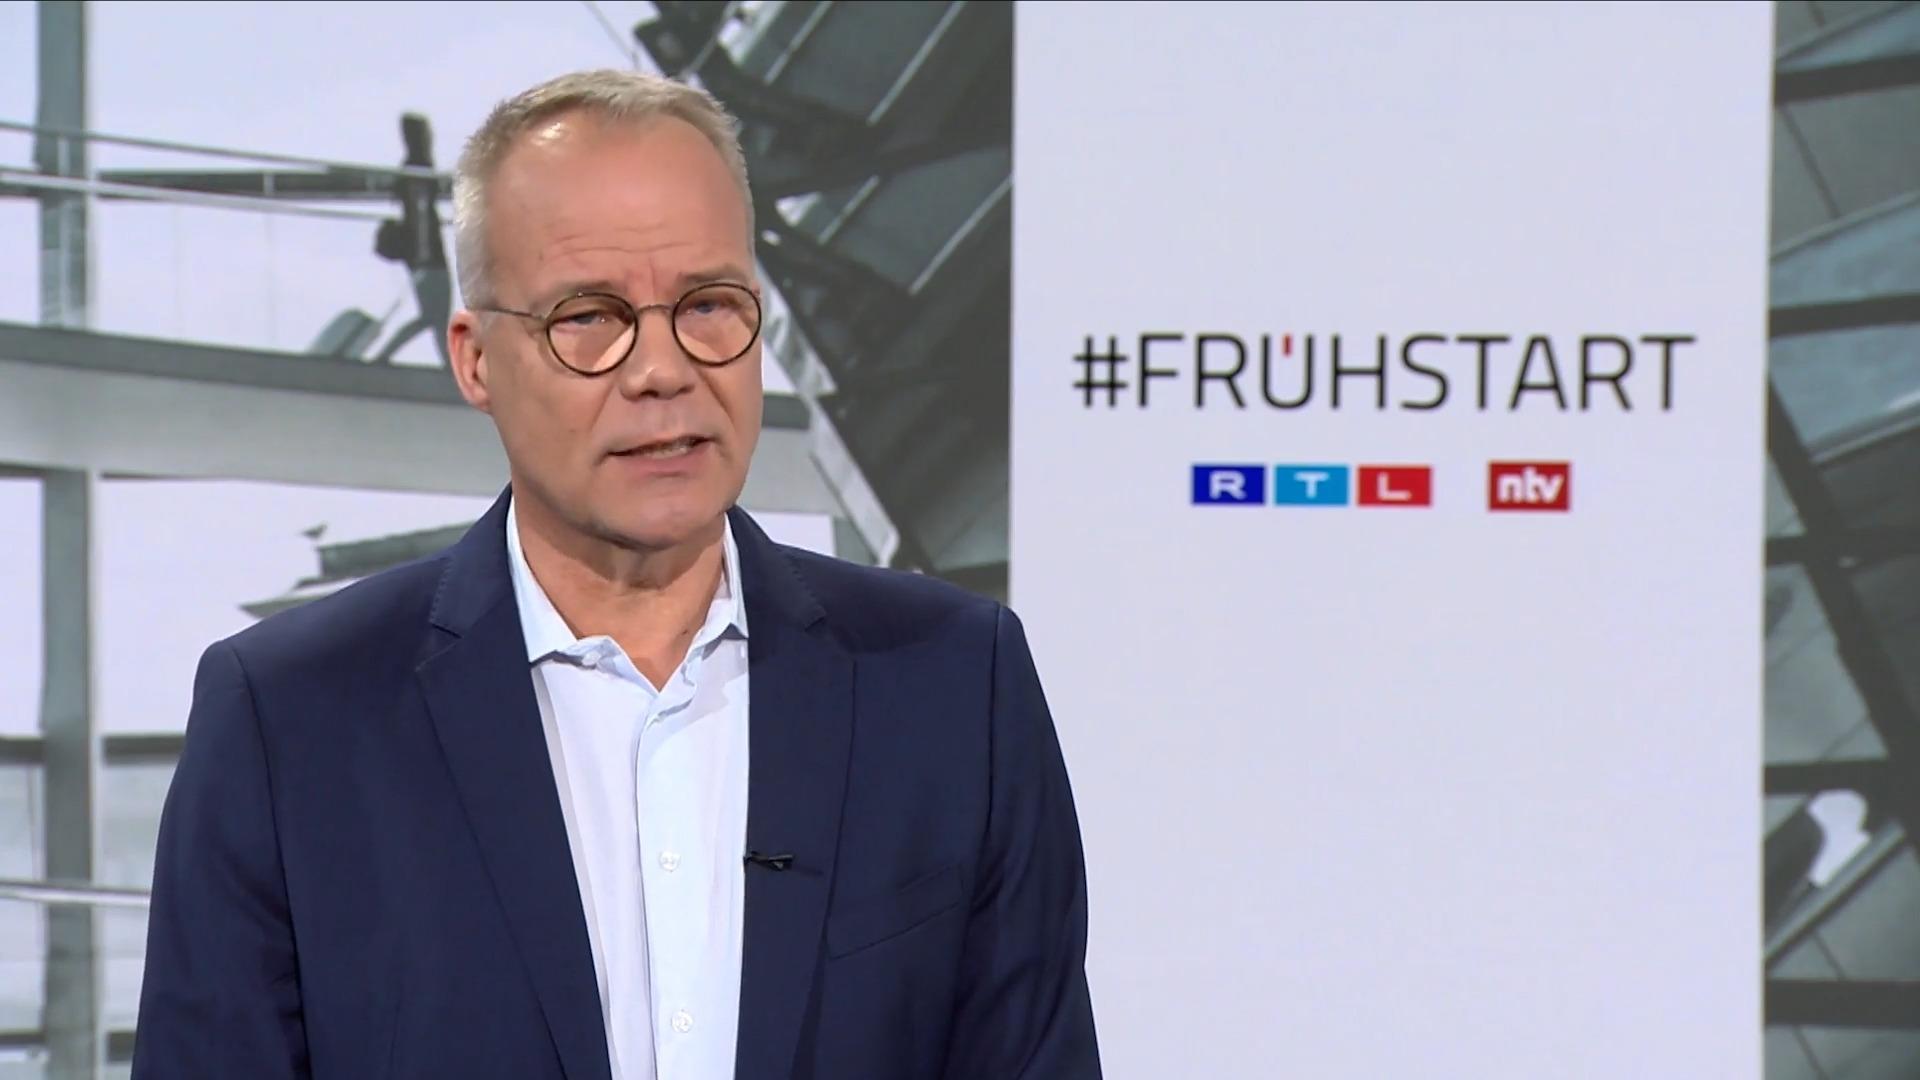 "Gerechtigkeitsfrage haben wir uns bei Boni gestellt" Miersch im RTL/ntv Frühstart